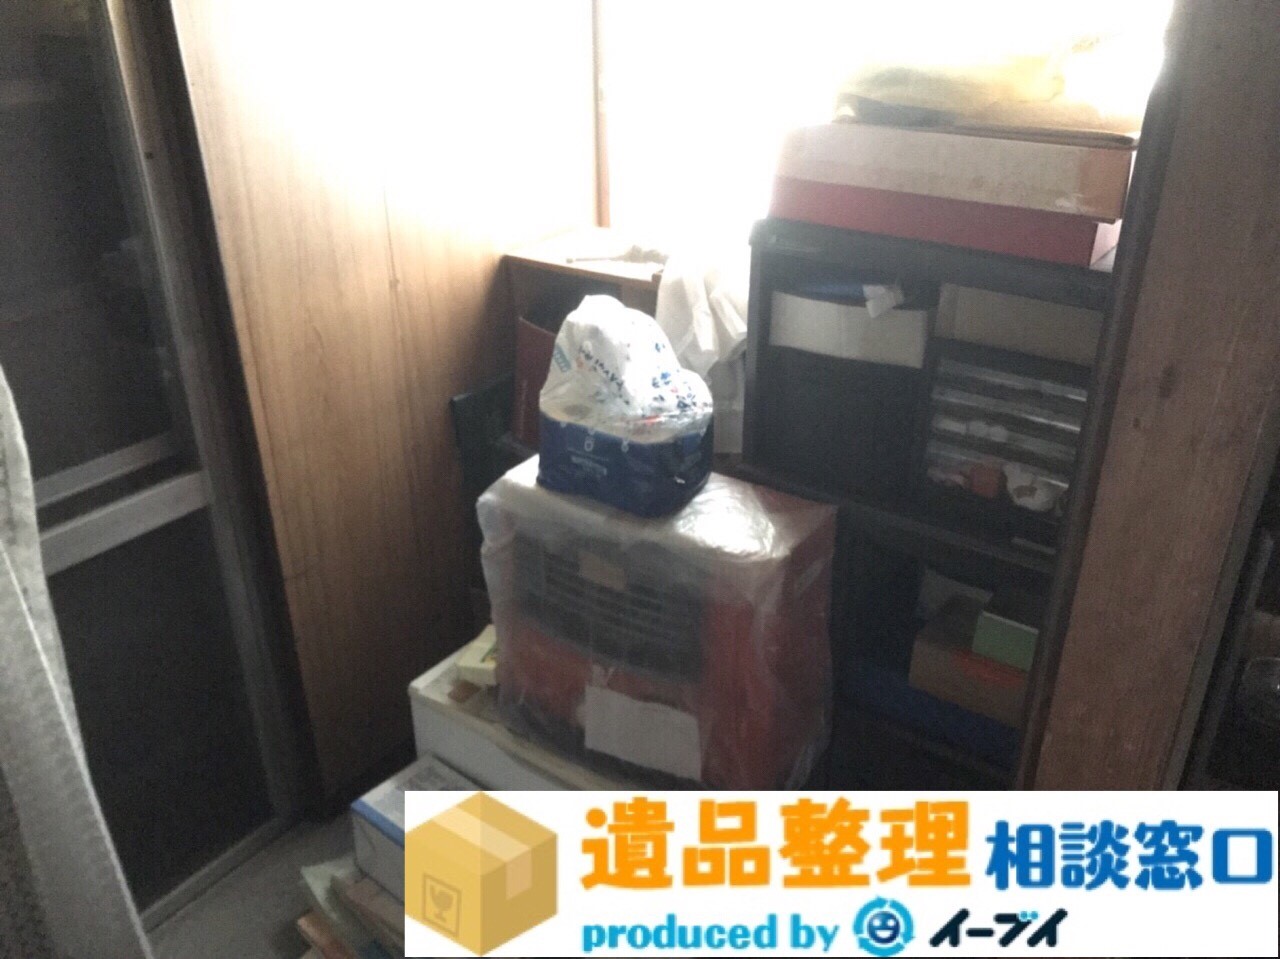 大阪府富田林市で遺品整理に伴い本棚や電化製品の処分をしました。のアイキャッチ